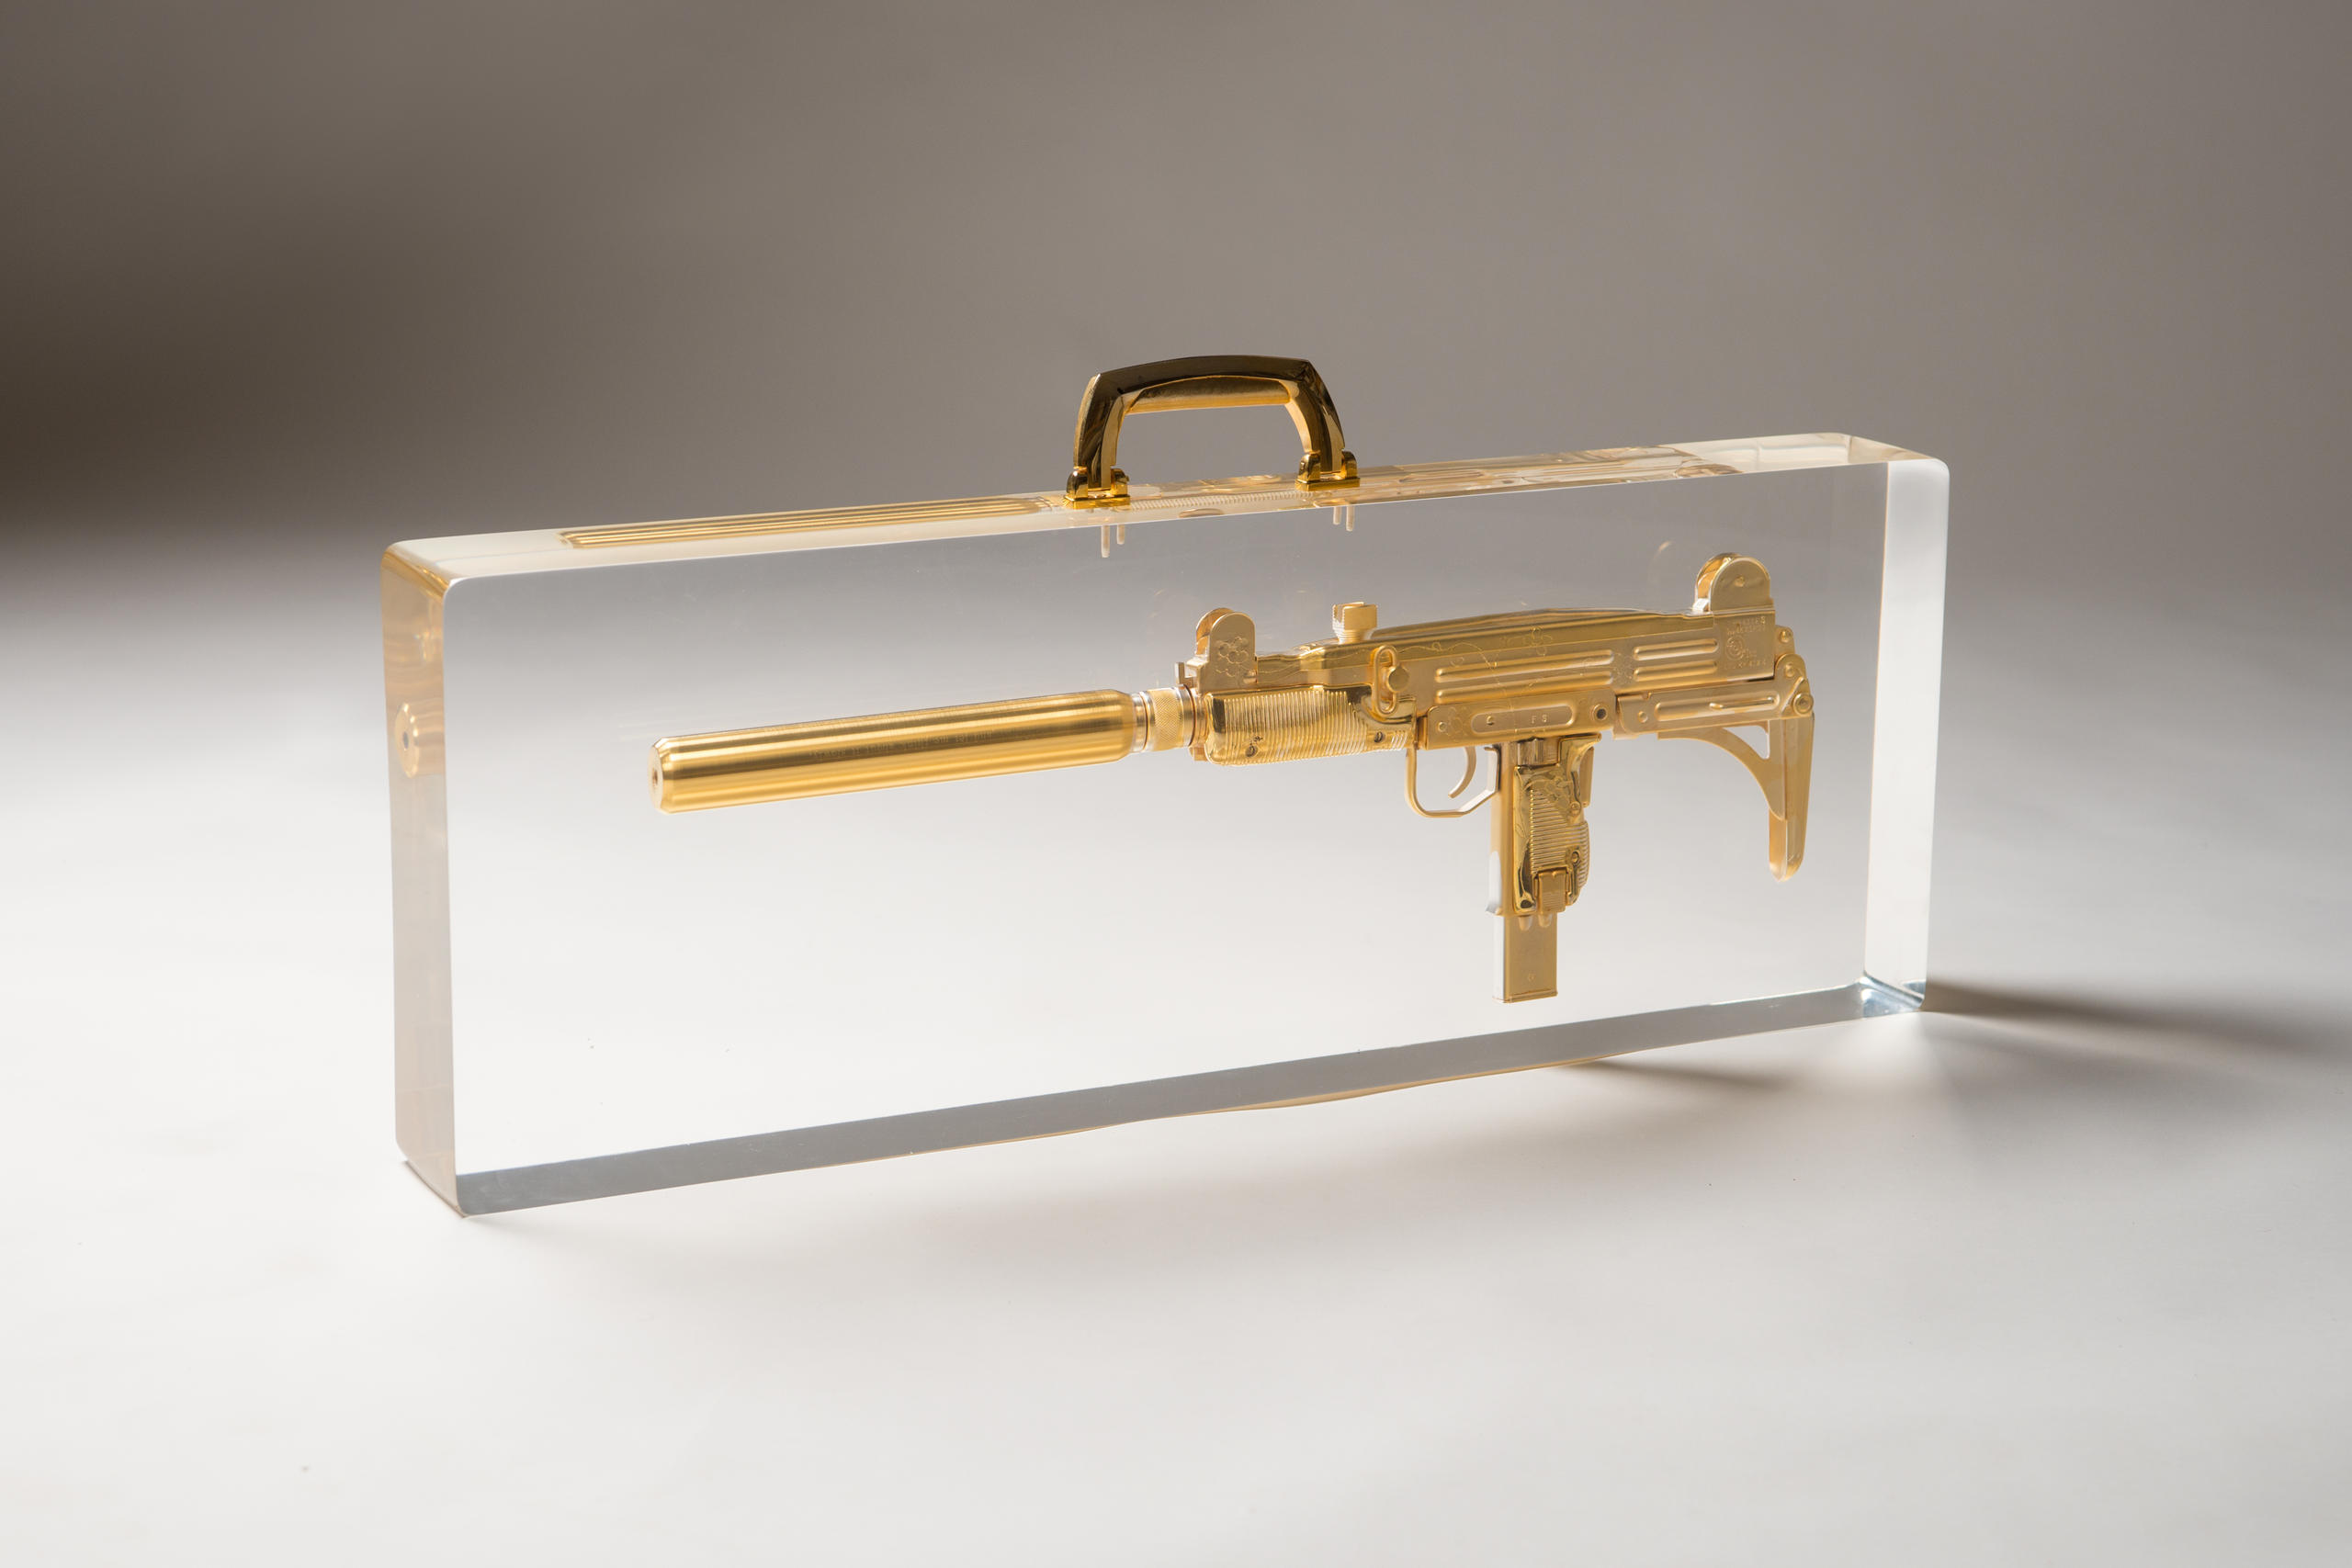 Maschinenpistole in Gold mit Schalldämpfer